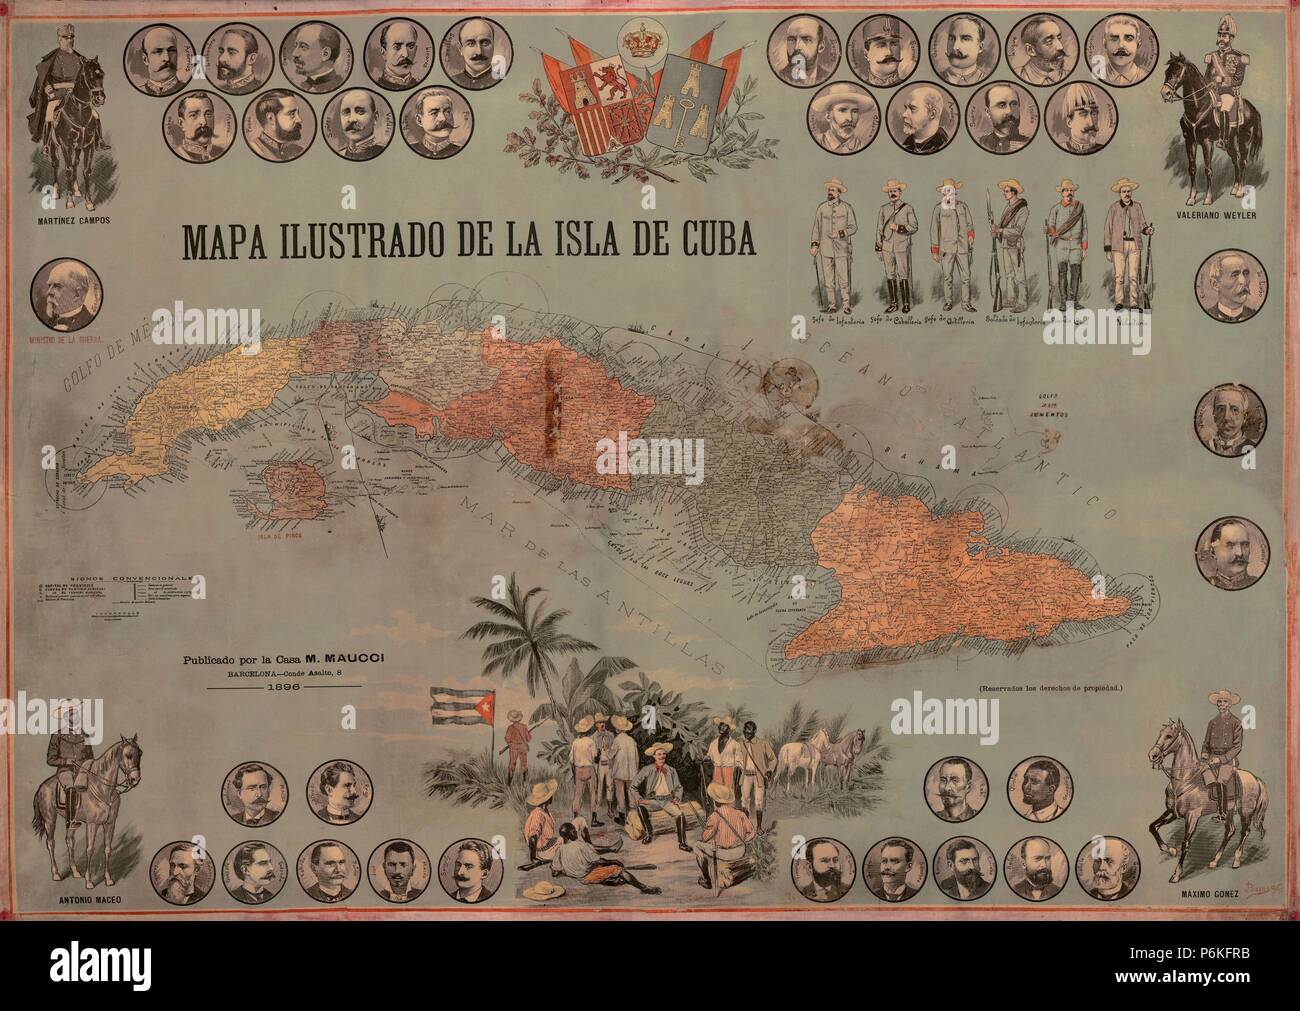 Mapa ilustrado de la Isla de Cuba de 1896 con mandos y'(Ejército español, e insurrectos cubanos. Foto Stock